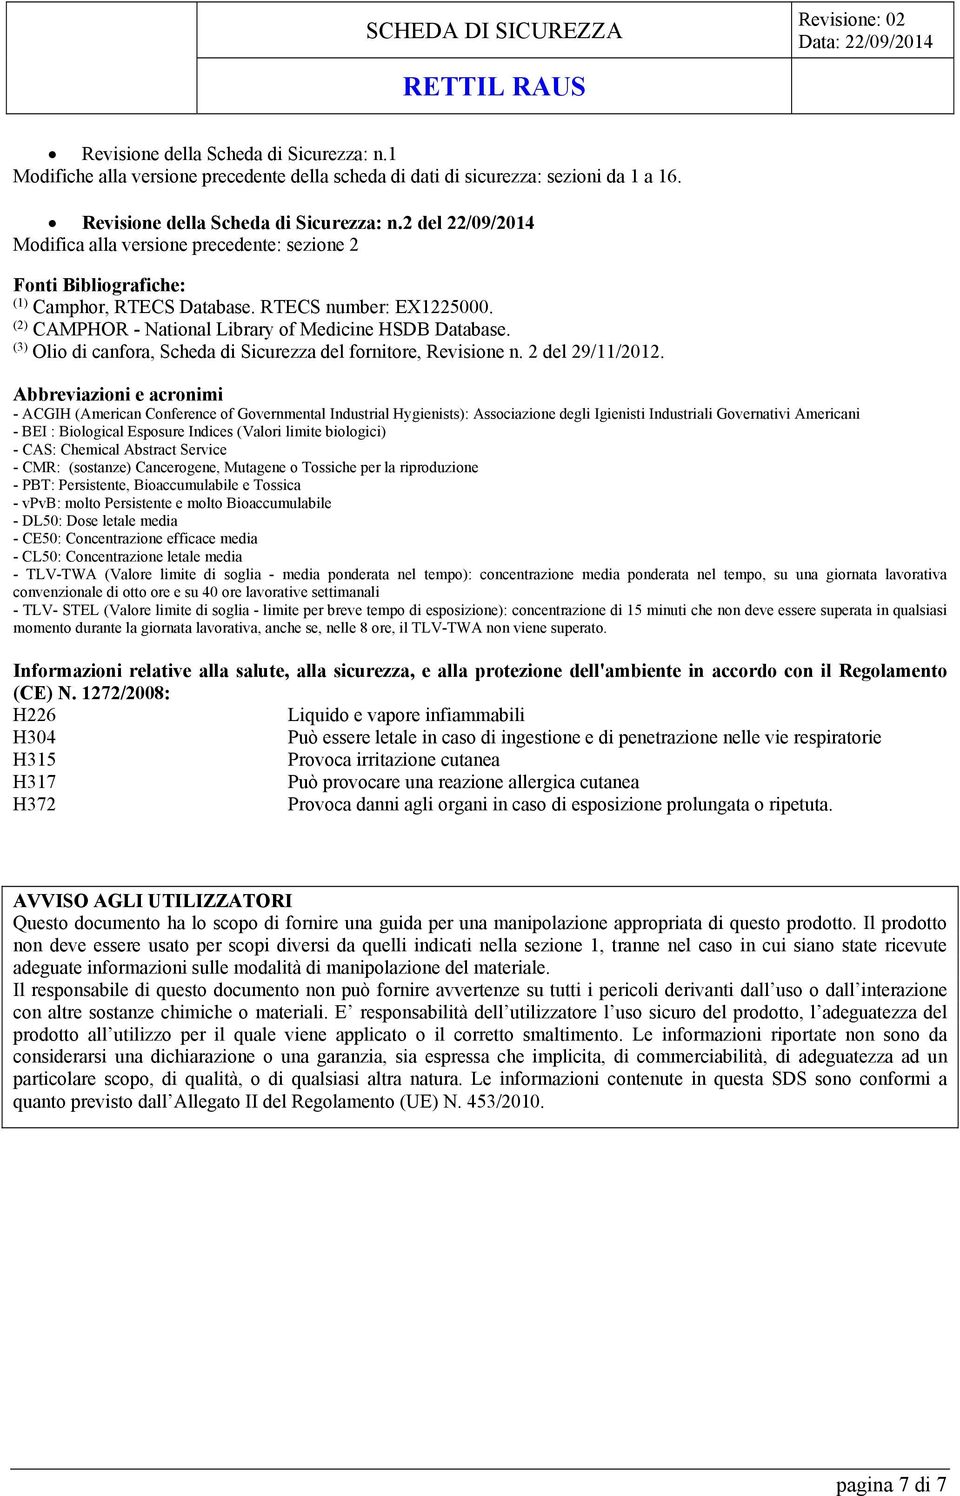 (3) Olio di canfora, Scheda di Sicurezza del fornitore, Revisione n. 2 del 29/11/2012.